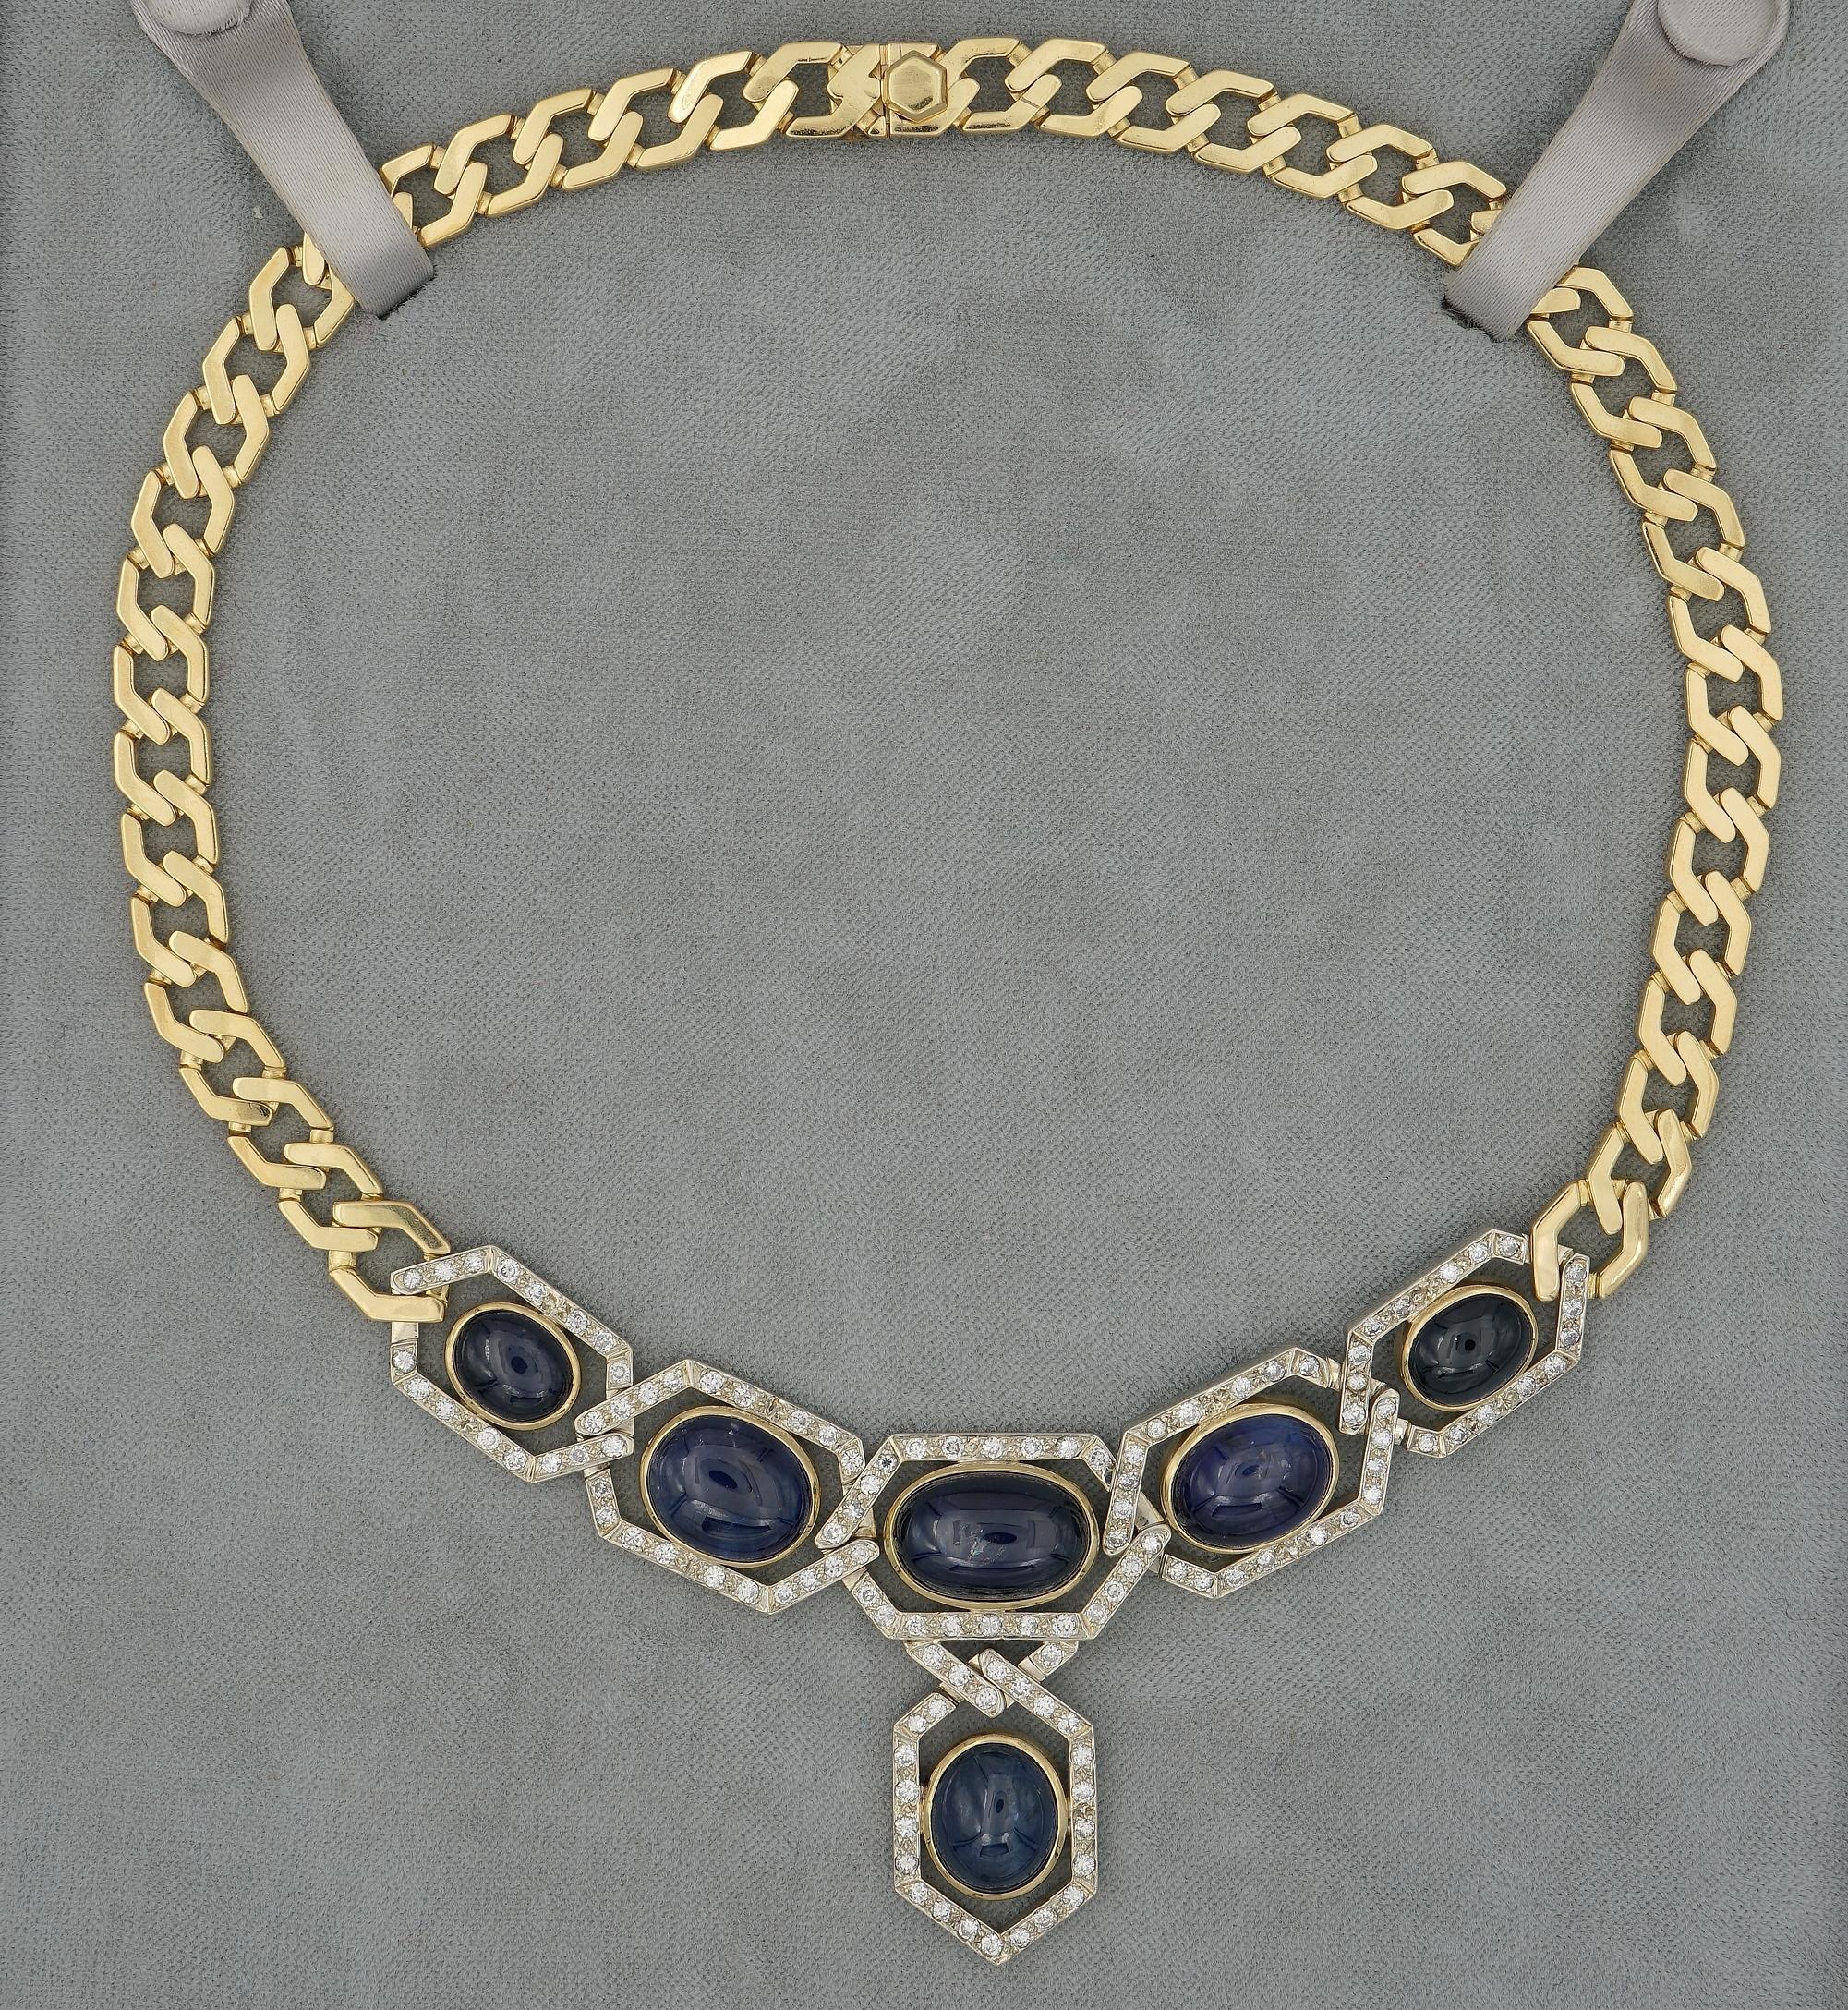 Diese sensationelle Saphir & Diamant Halskette ist 1970 ca.
Kühn und schick, handgeschneidert in den 70er Jahren  als Unikat aus massivem 18 KT Gold - italienischer Herkunft
Wiegt 80,6 Gramm
Attraktives Design in der Mode der Zeit mit einer dicken